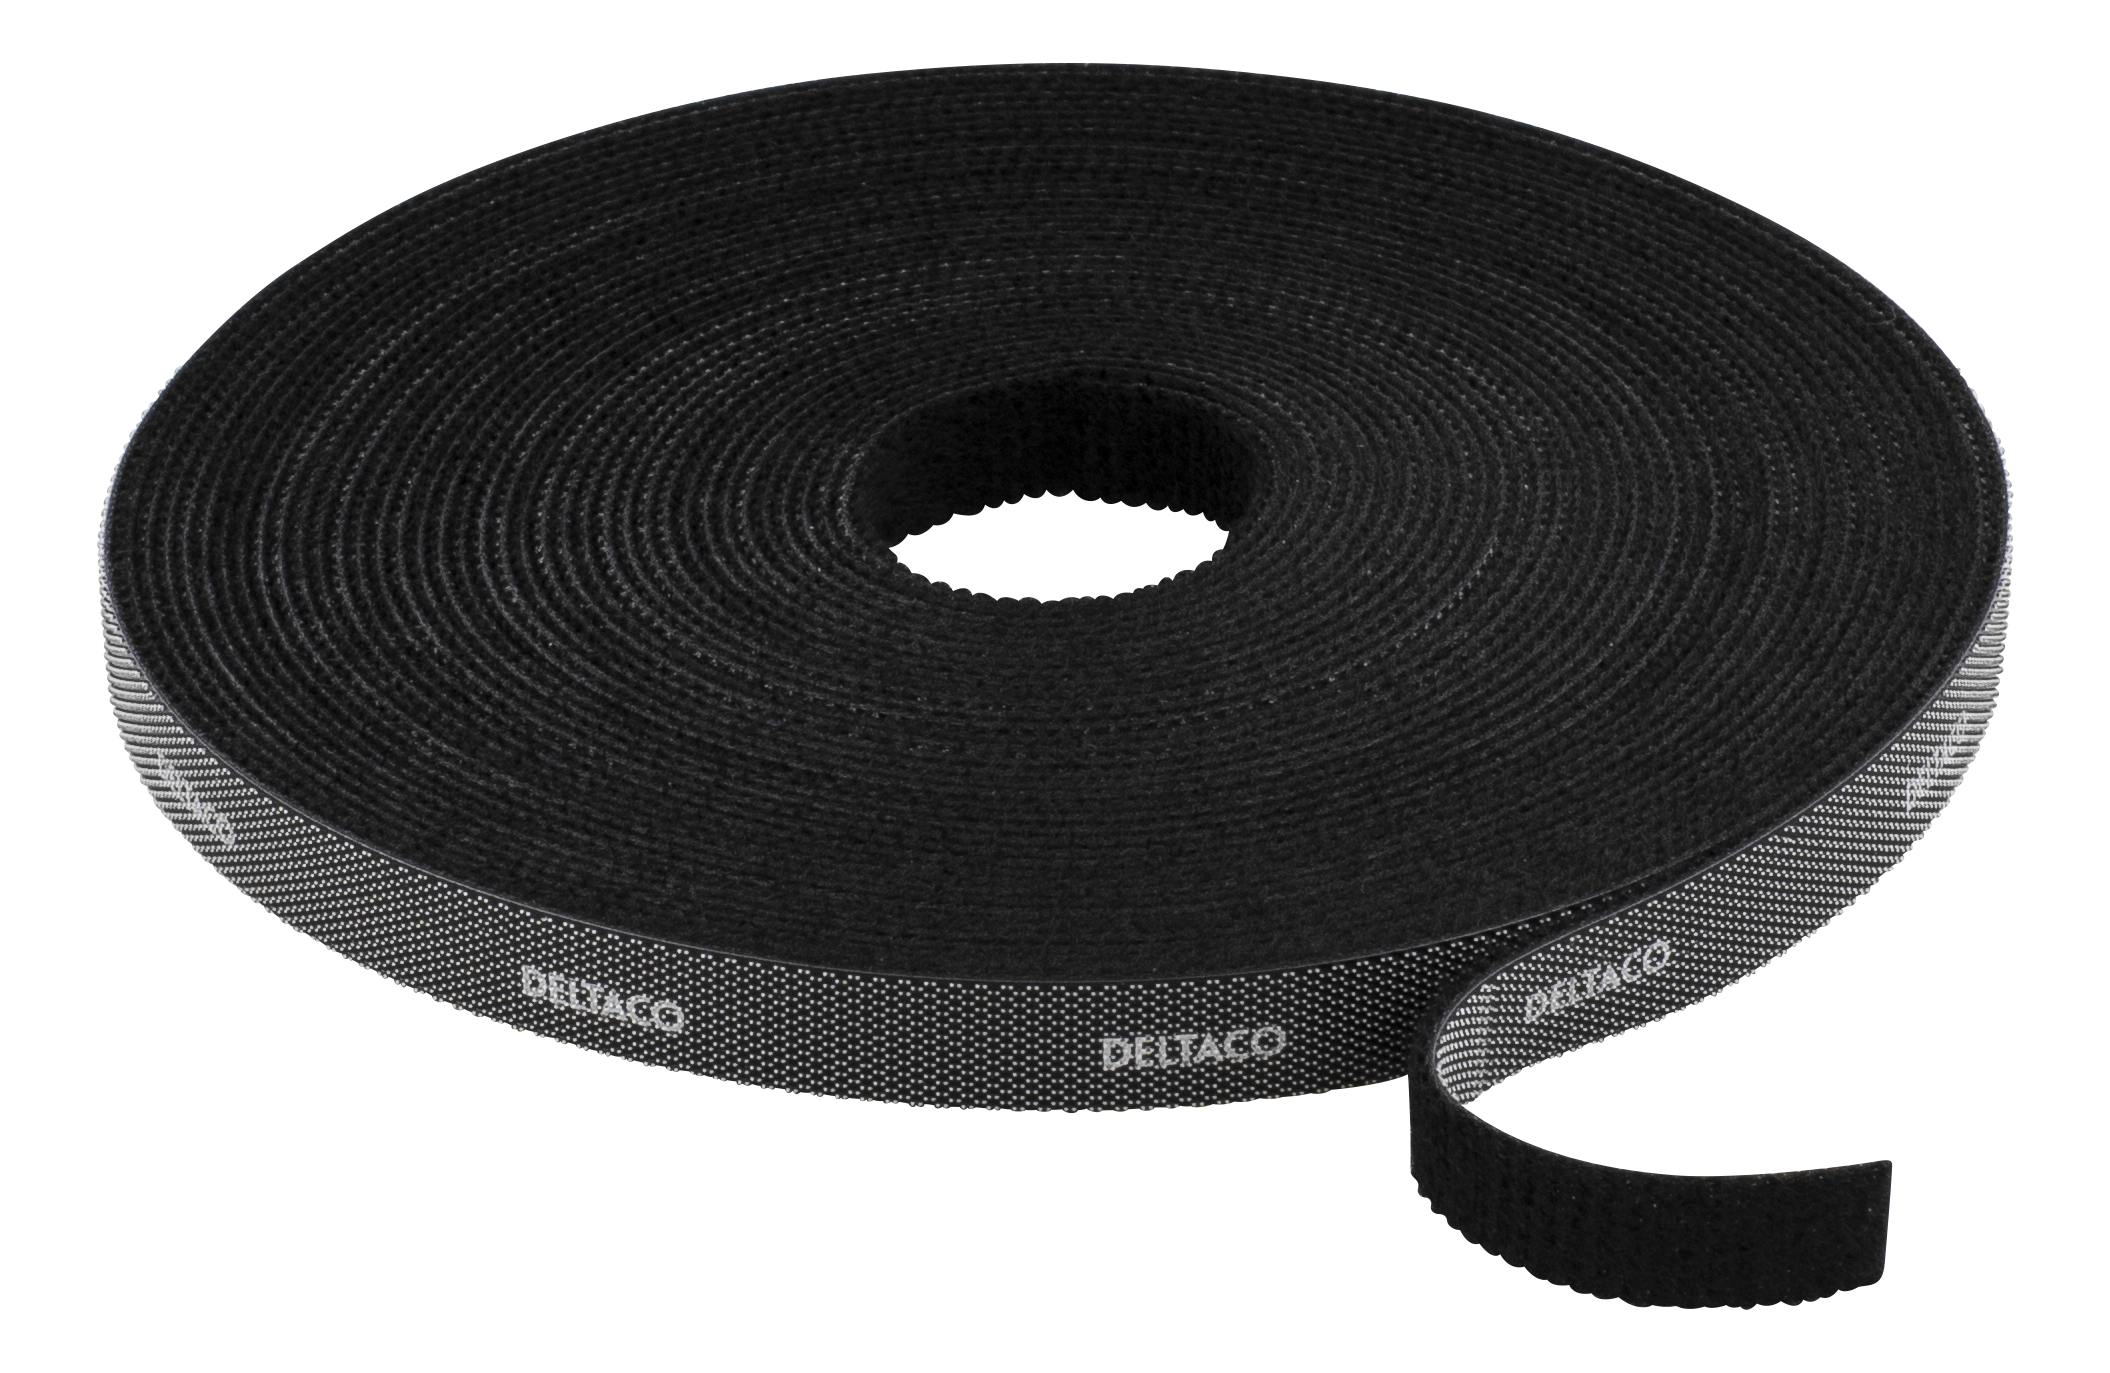 DELTACO kardborrband på rulle, bredd 9mm, 10m, svart